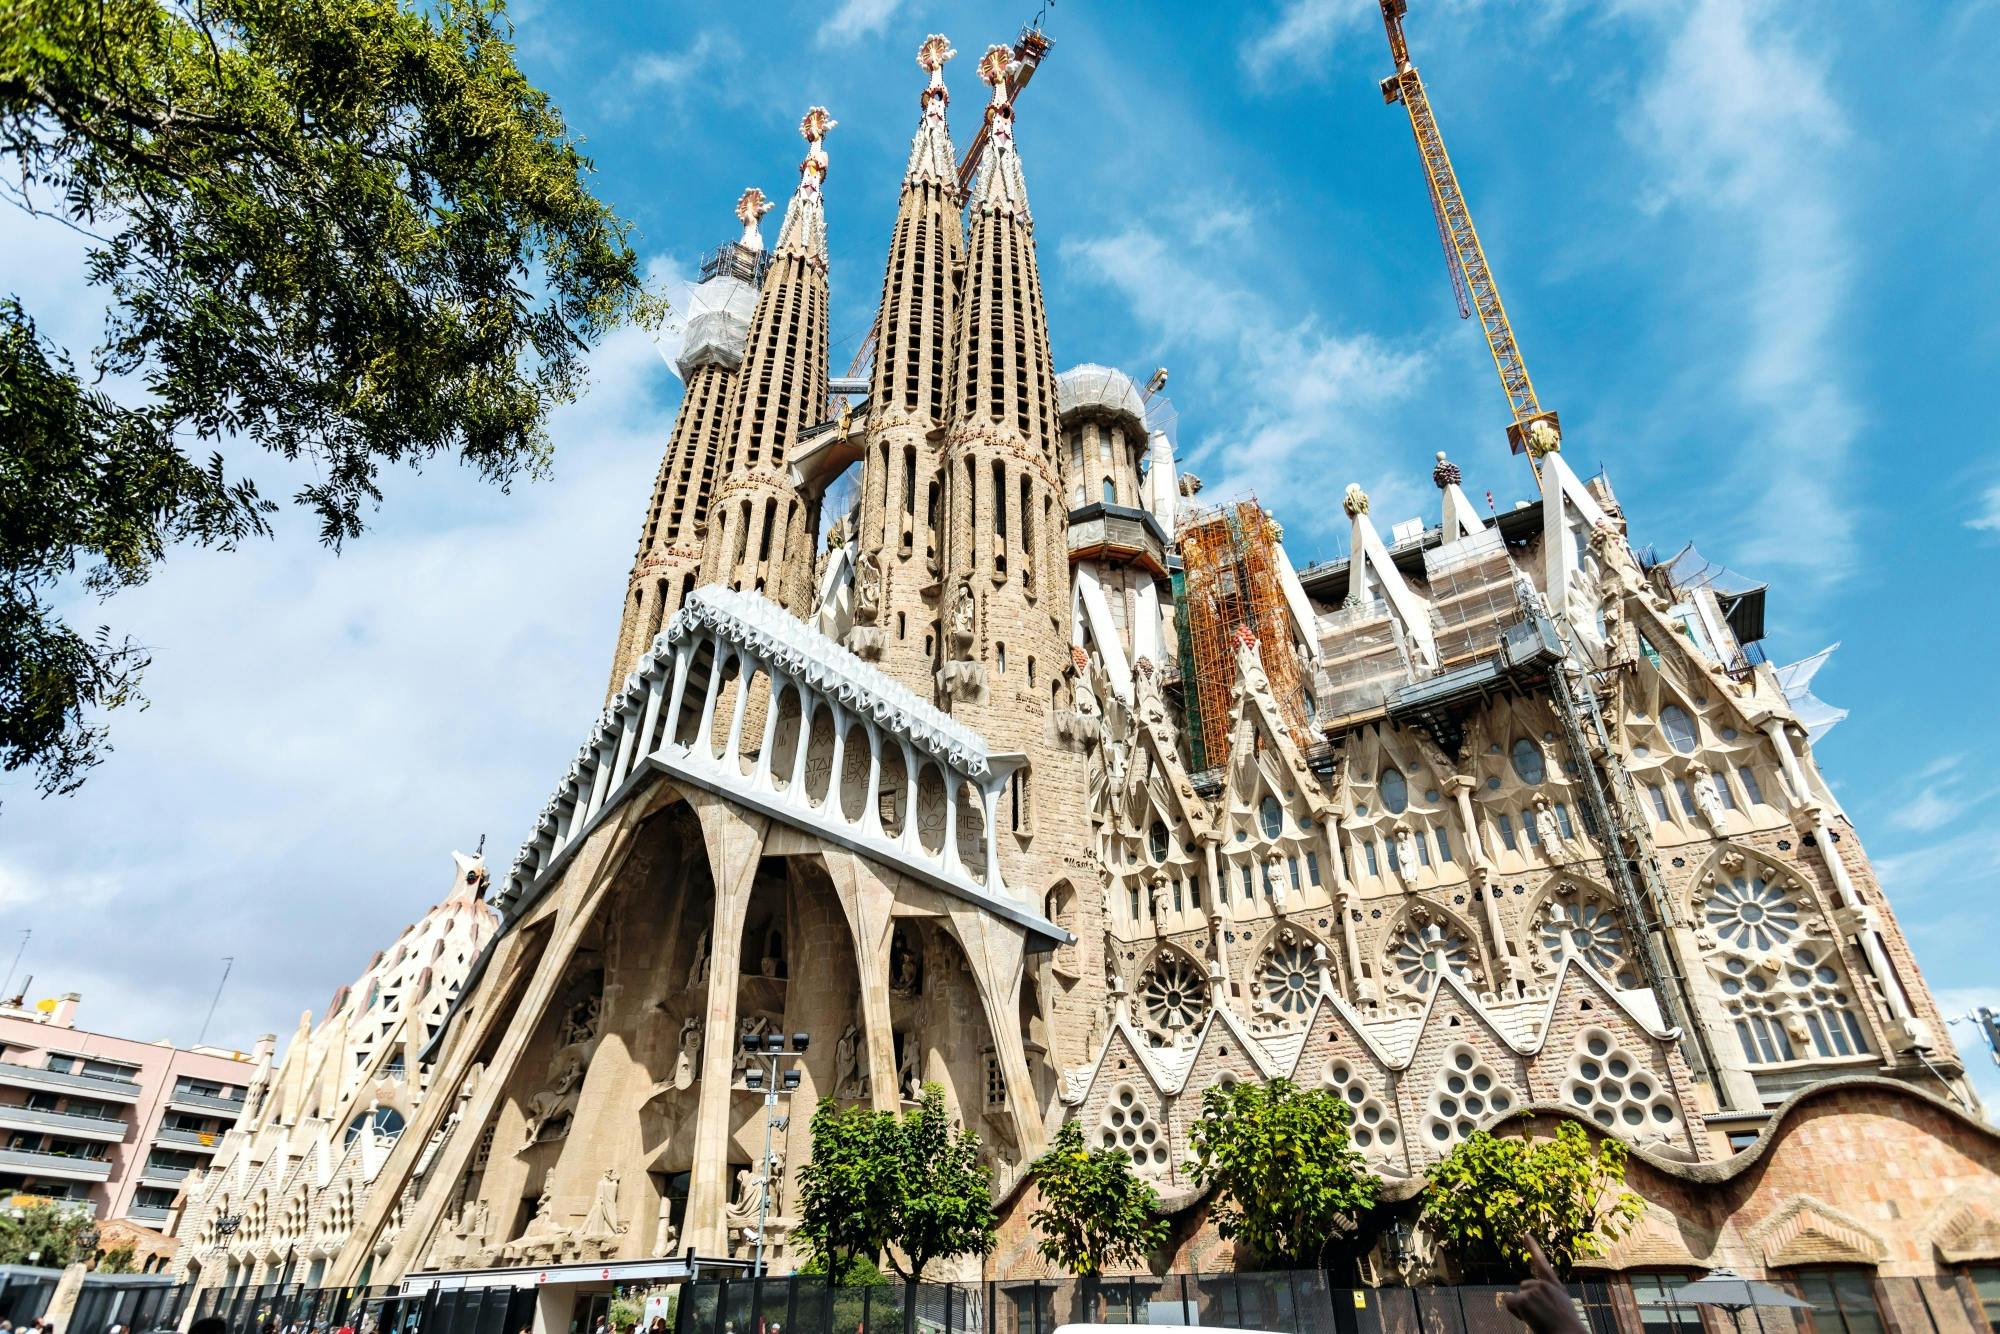 Sagrada Familian sisäänpääsyliput